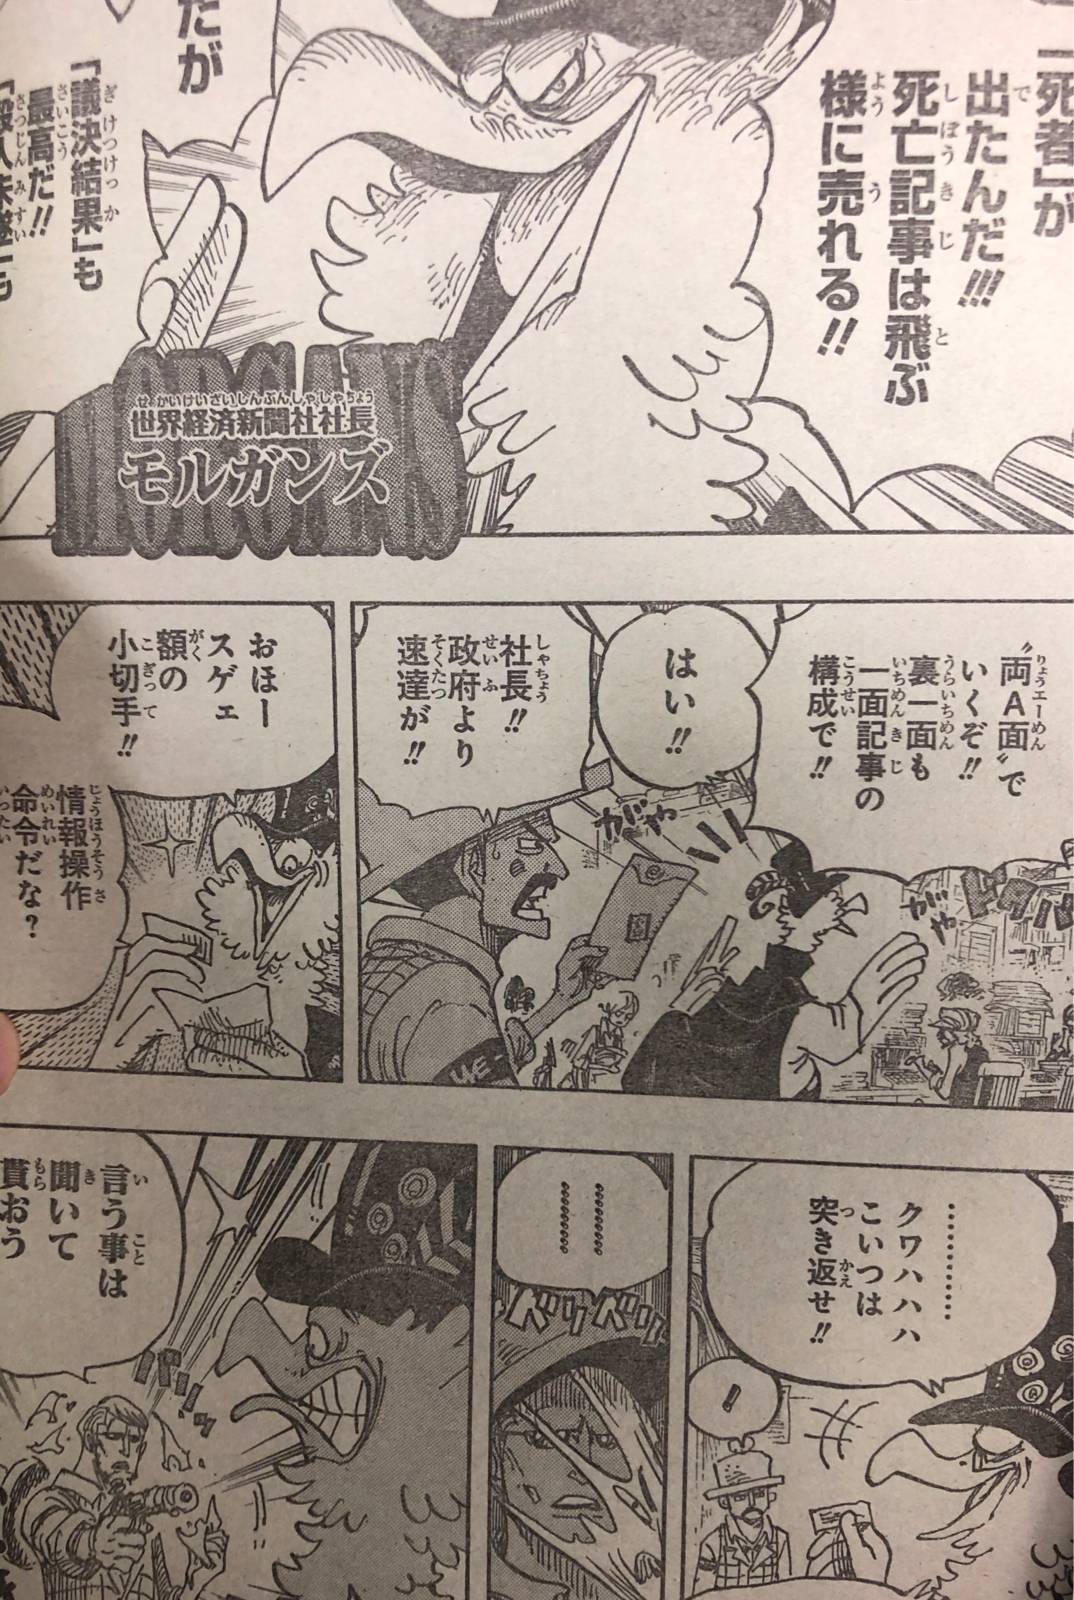 Onatekno Tips Dan Tutorial Serta Berita Terbaru One Piece Manga Chapter 956 Spoilers